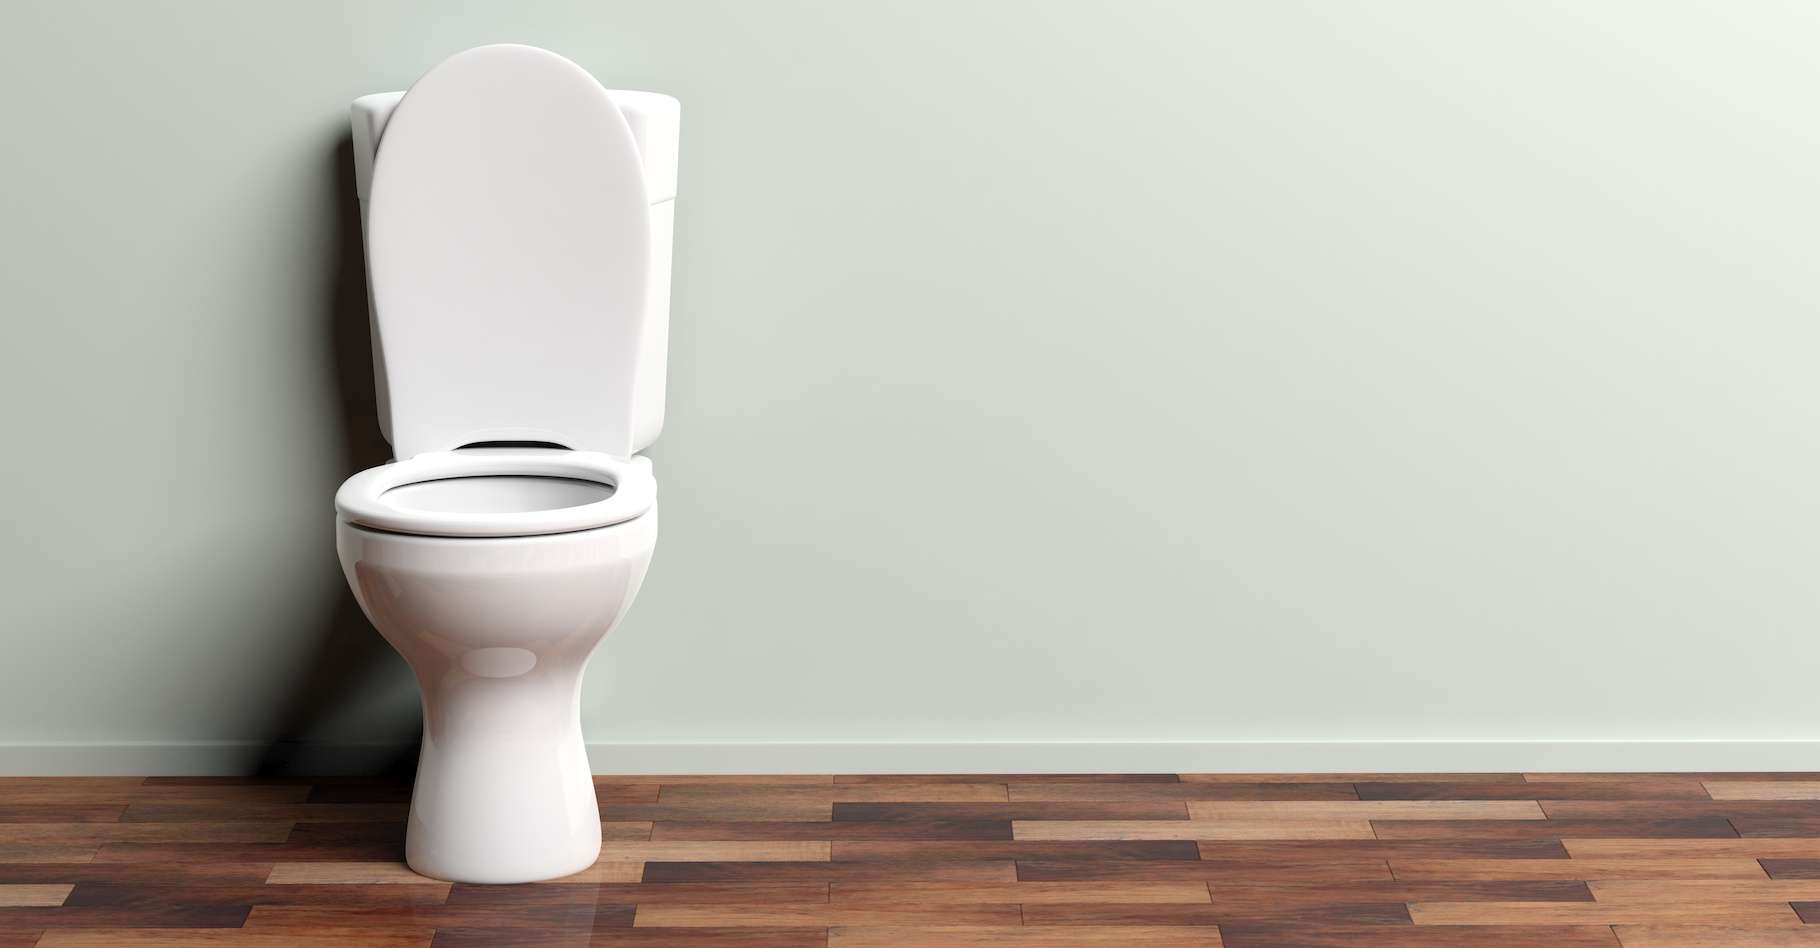 Des toilettes intelligentes pour surveiller notre santé